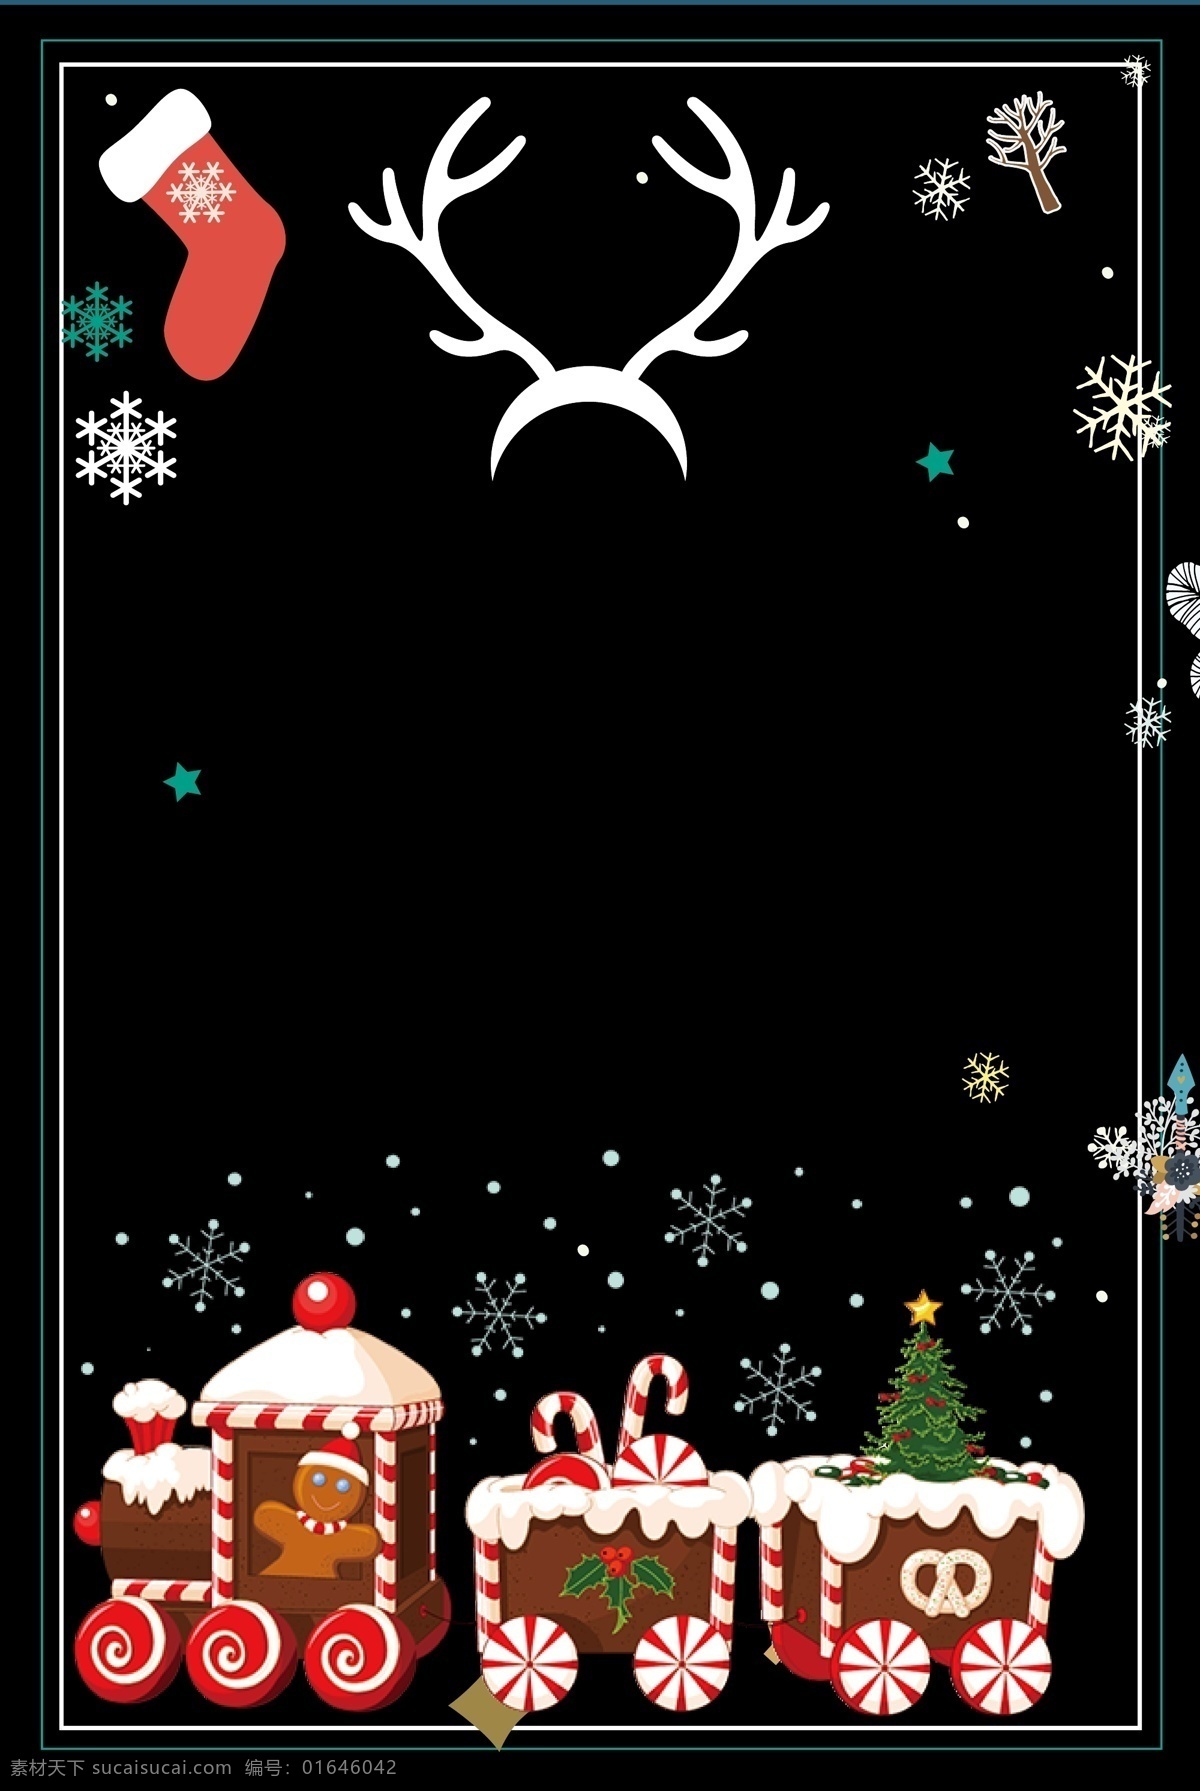 2019 圣诞节 平安夜 背景 圣诞树 广告背景 圣诞素材 圣诞快乐 圣诞节促销 圣诞节展板